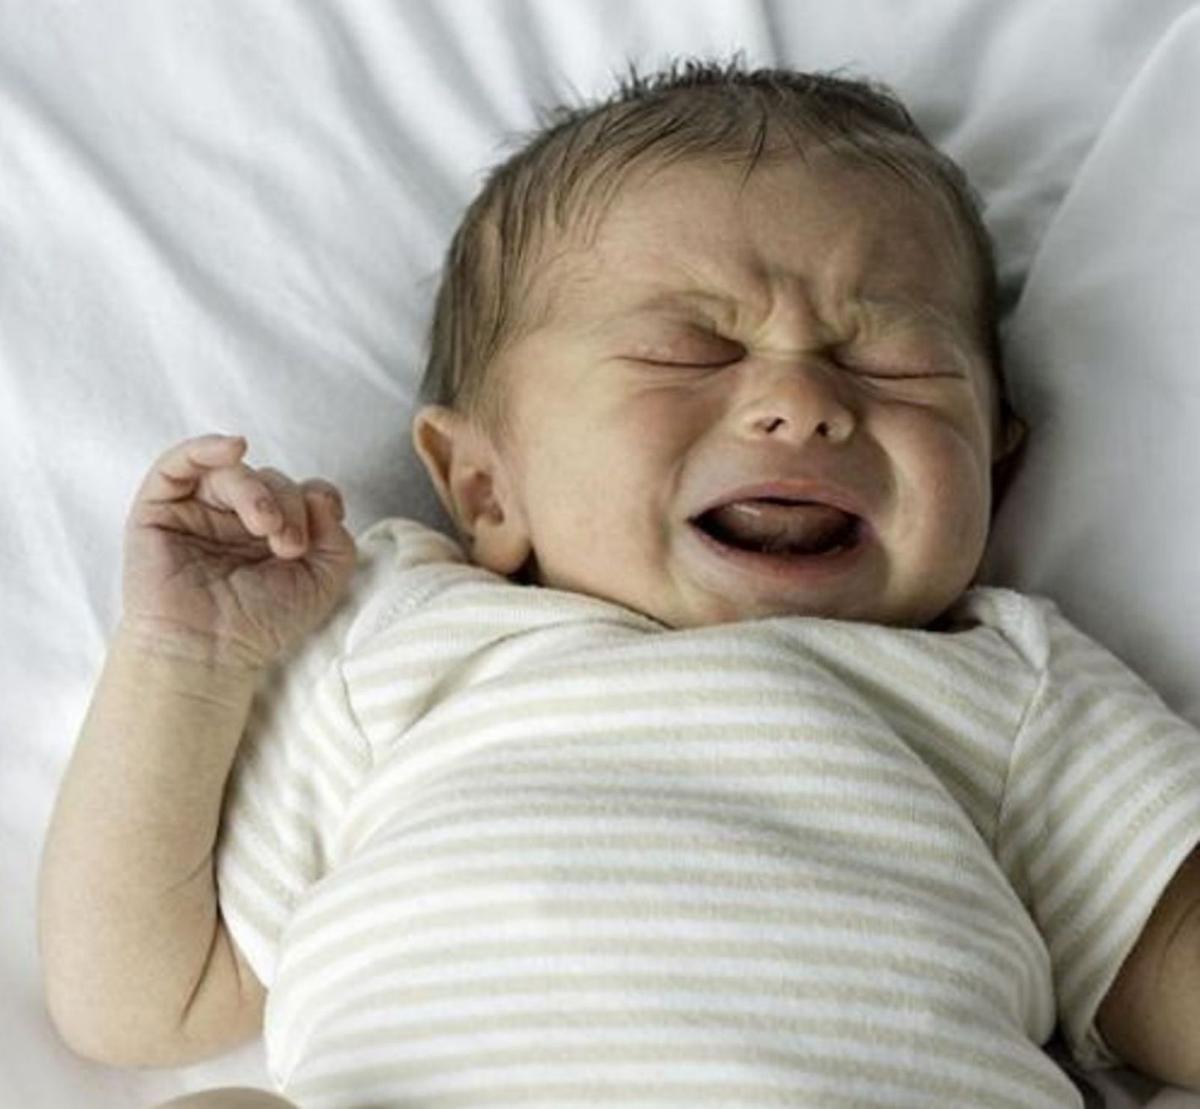 Confirmat: si el plor és agut, el seu nadó està angoixat